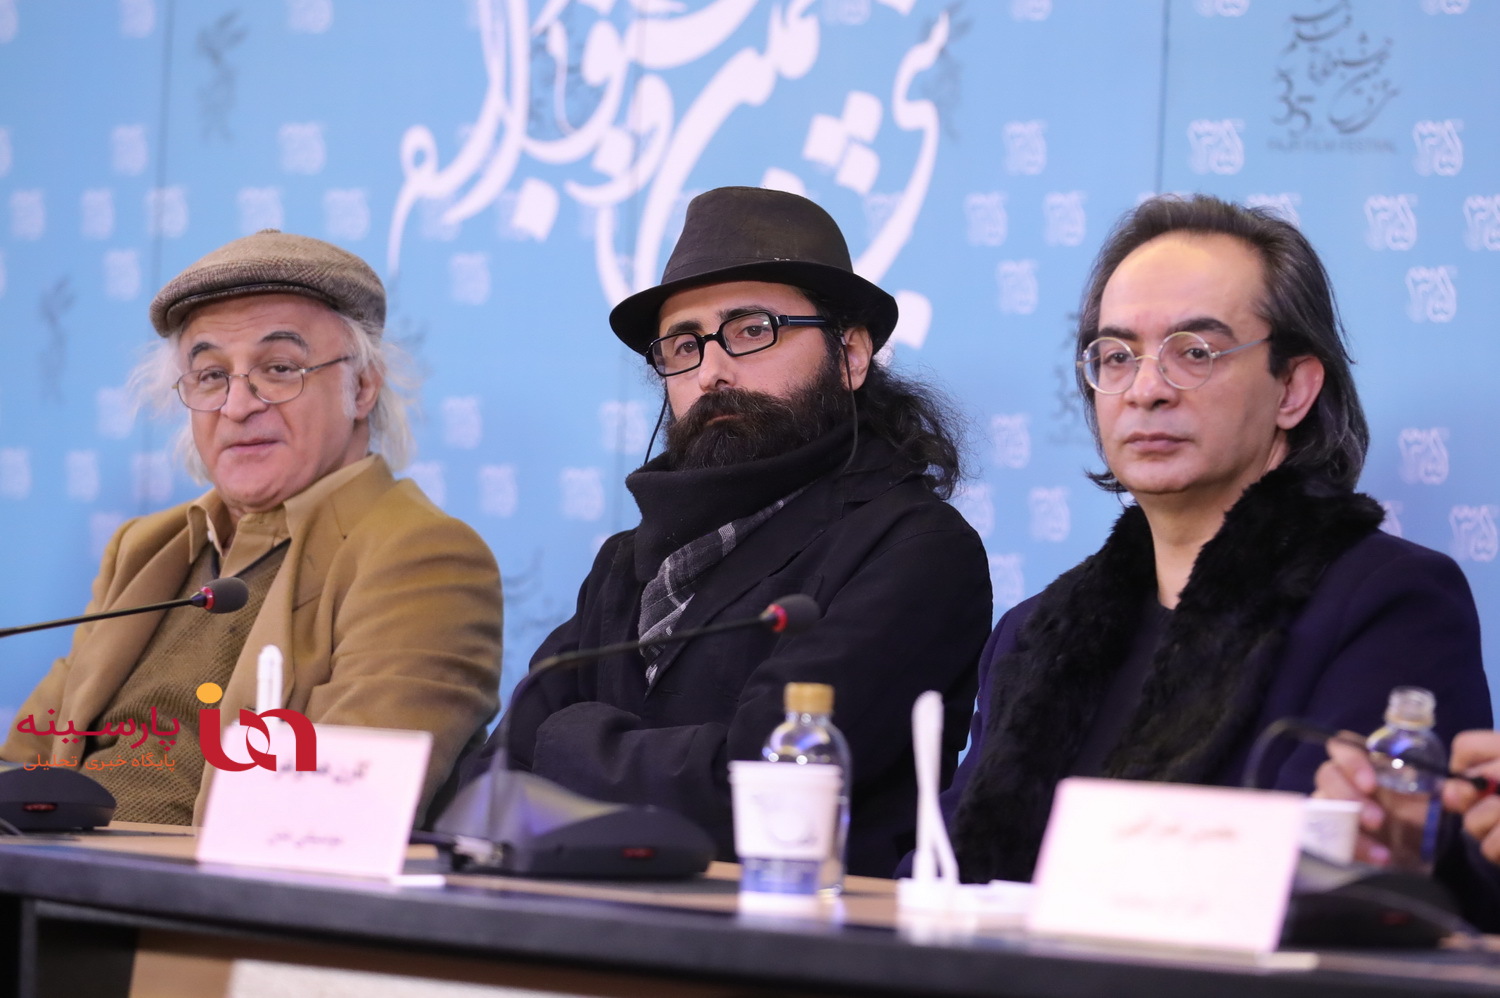 متن و حواشی فیلم های روز هشتم کاخ جشنواره در قاب تصویر